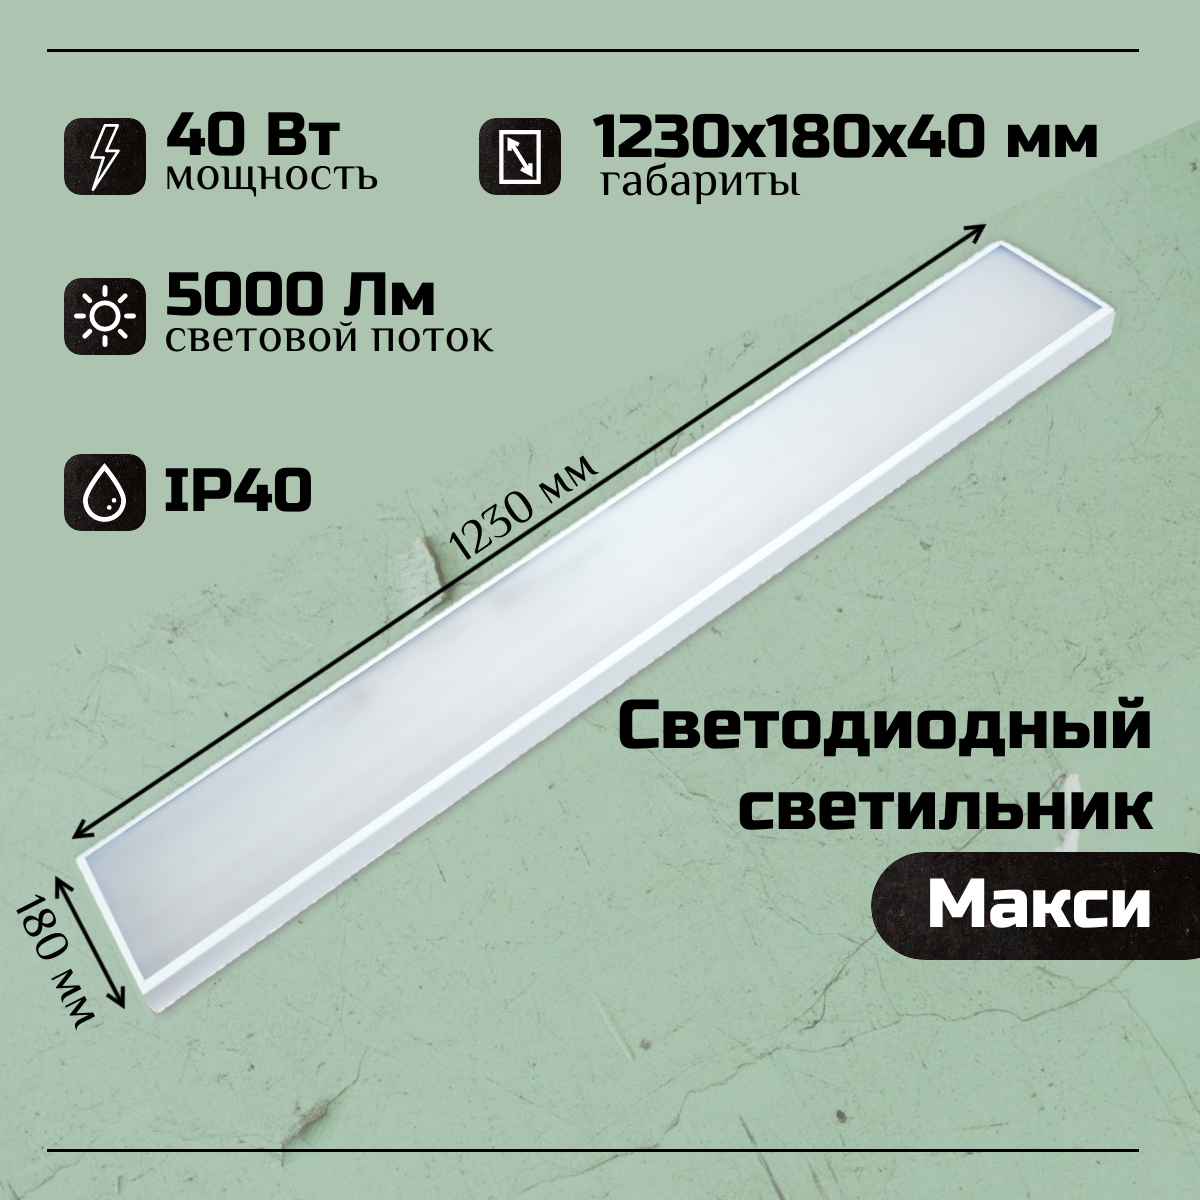 Светильник светодиодный Макси 40W, 5000Lm, 5000К, IP40, Микропризма, потолочный светильник для административно-офисных помещений и магазинов